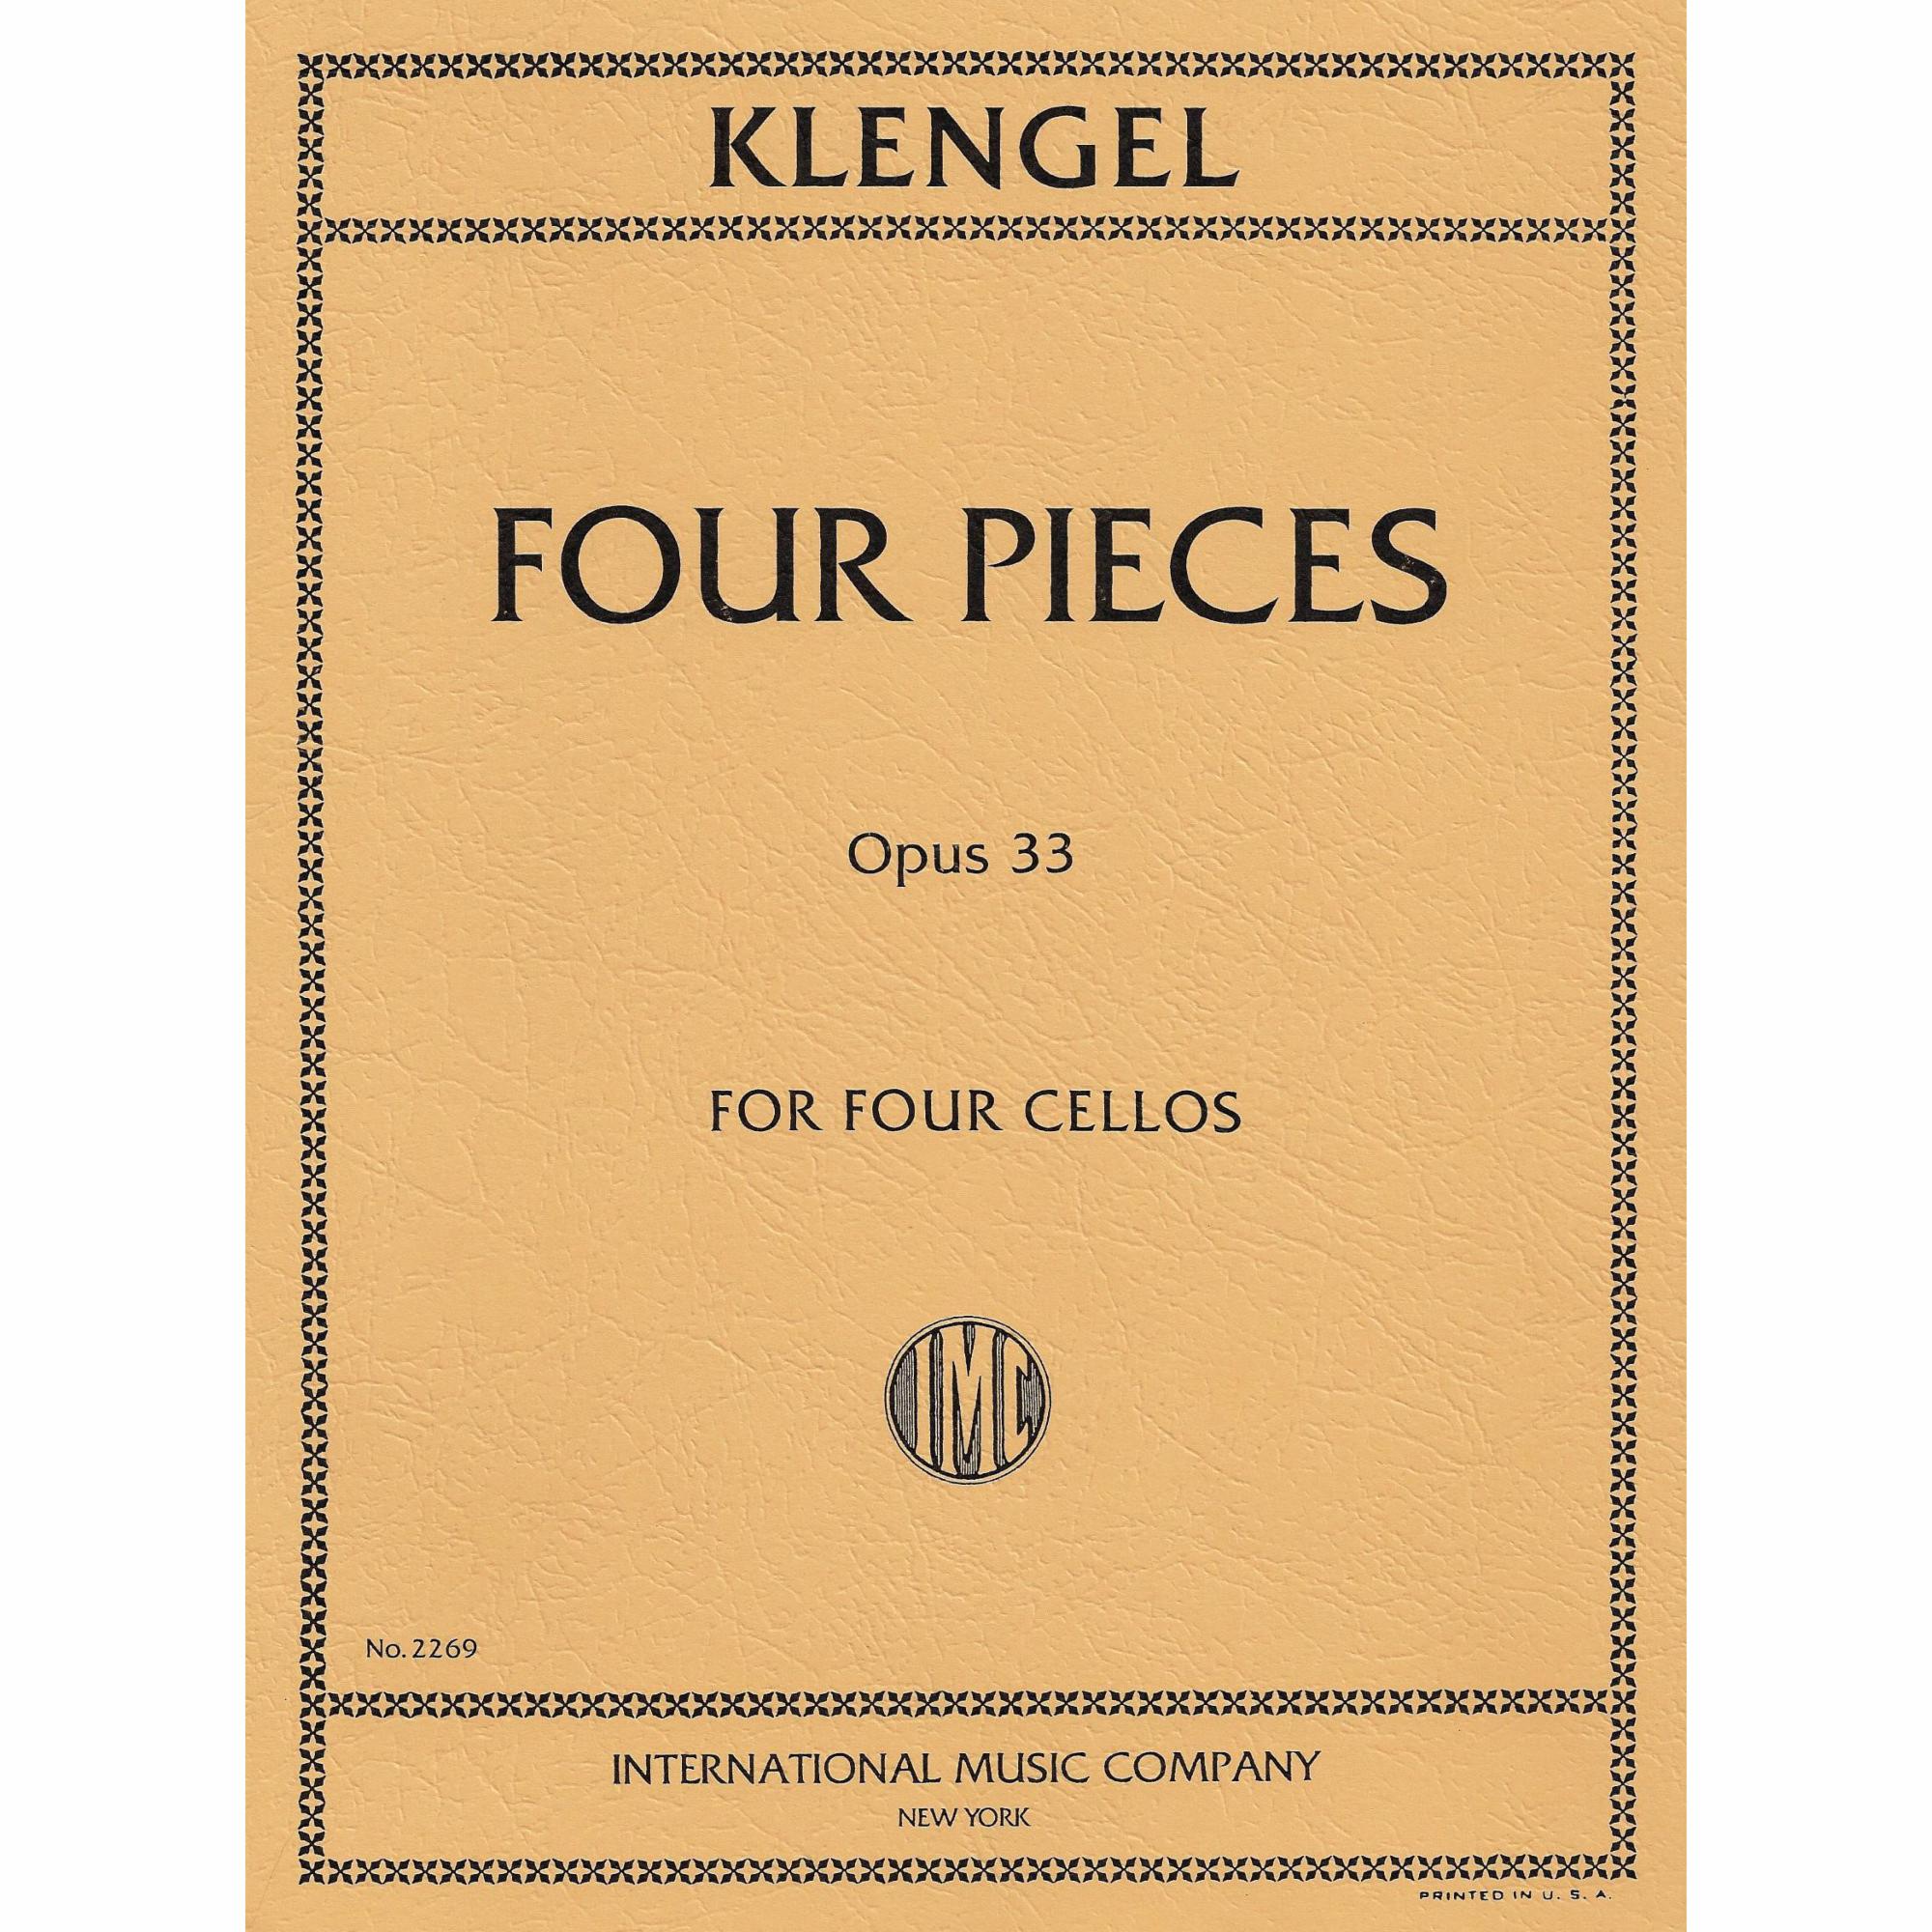 Klengel -- Four Pieces, Op. 33 for Four Cellos